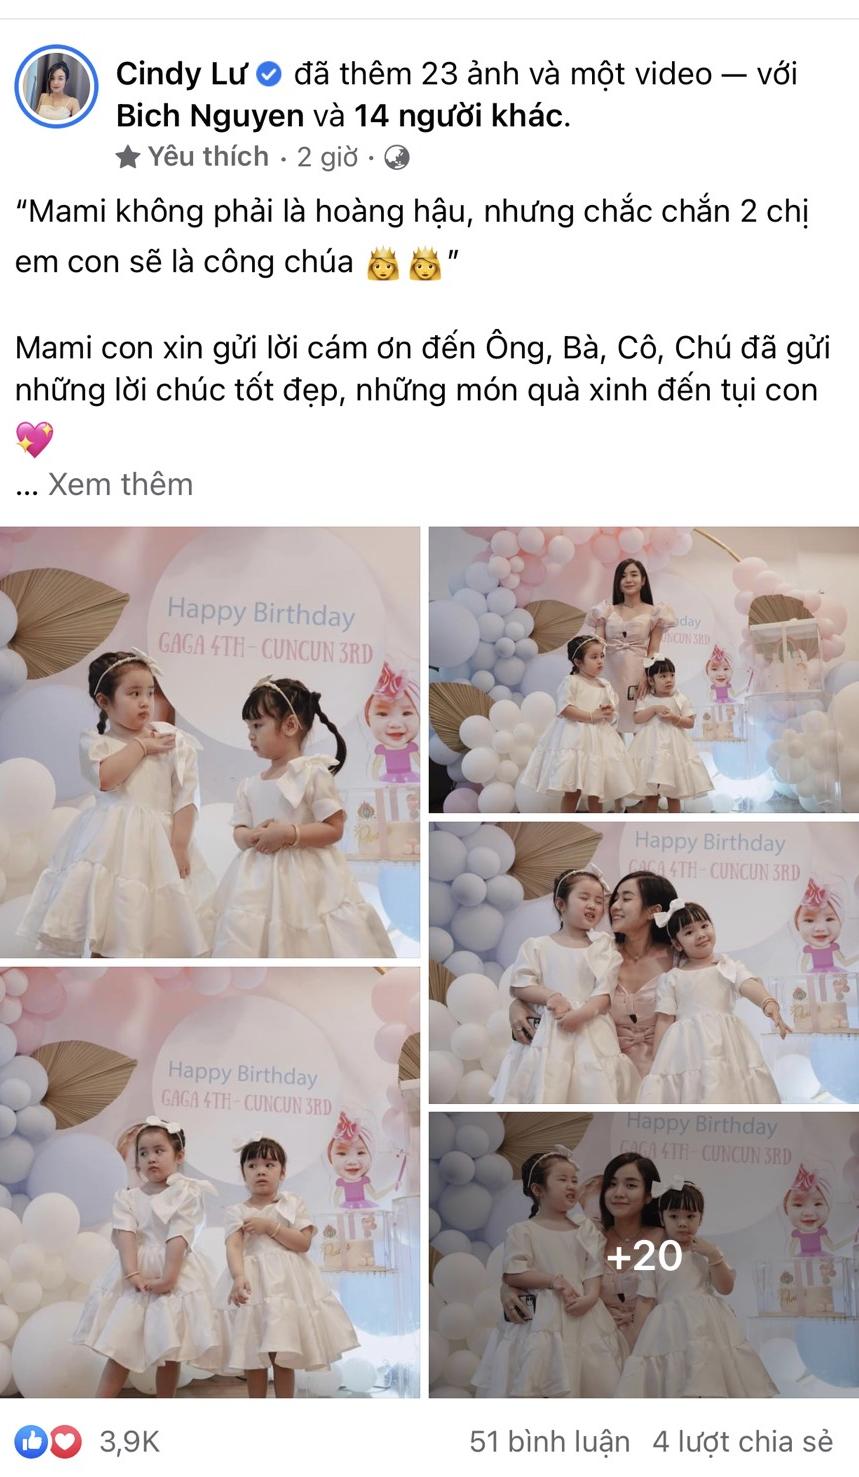 Bài viết mới nhất của Cindy Lư, khoe khoảnh khắc trong sinh nhật của 2 cô con gái thu hút sự chú ý của cư dân mạng